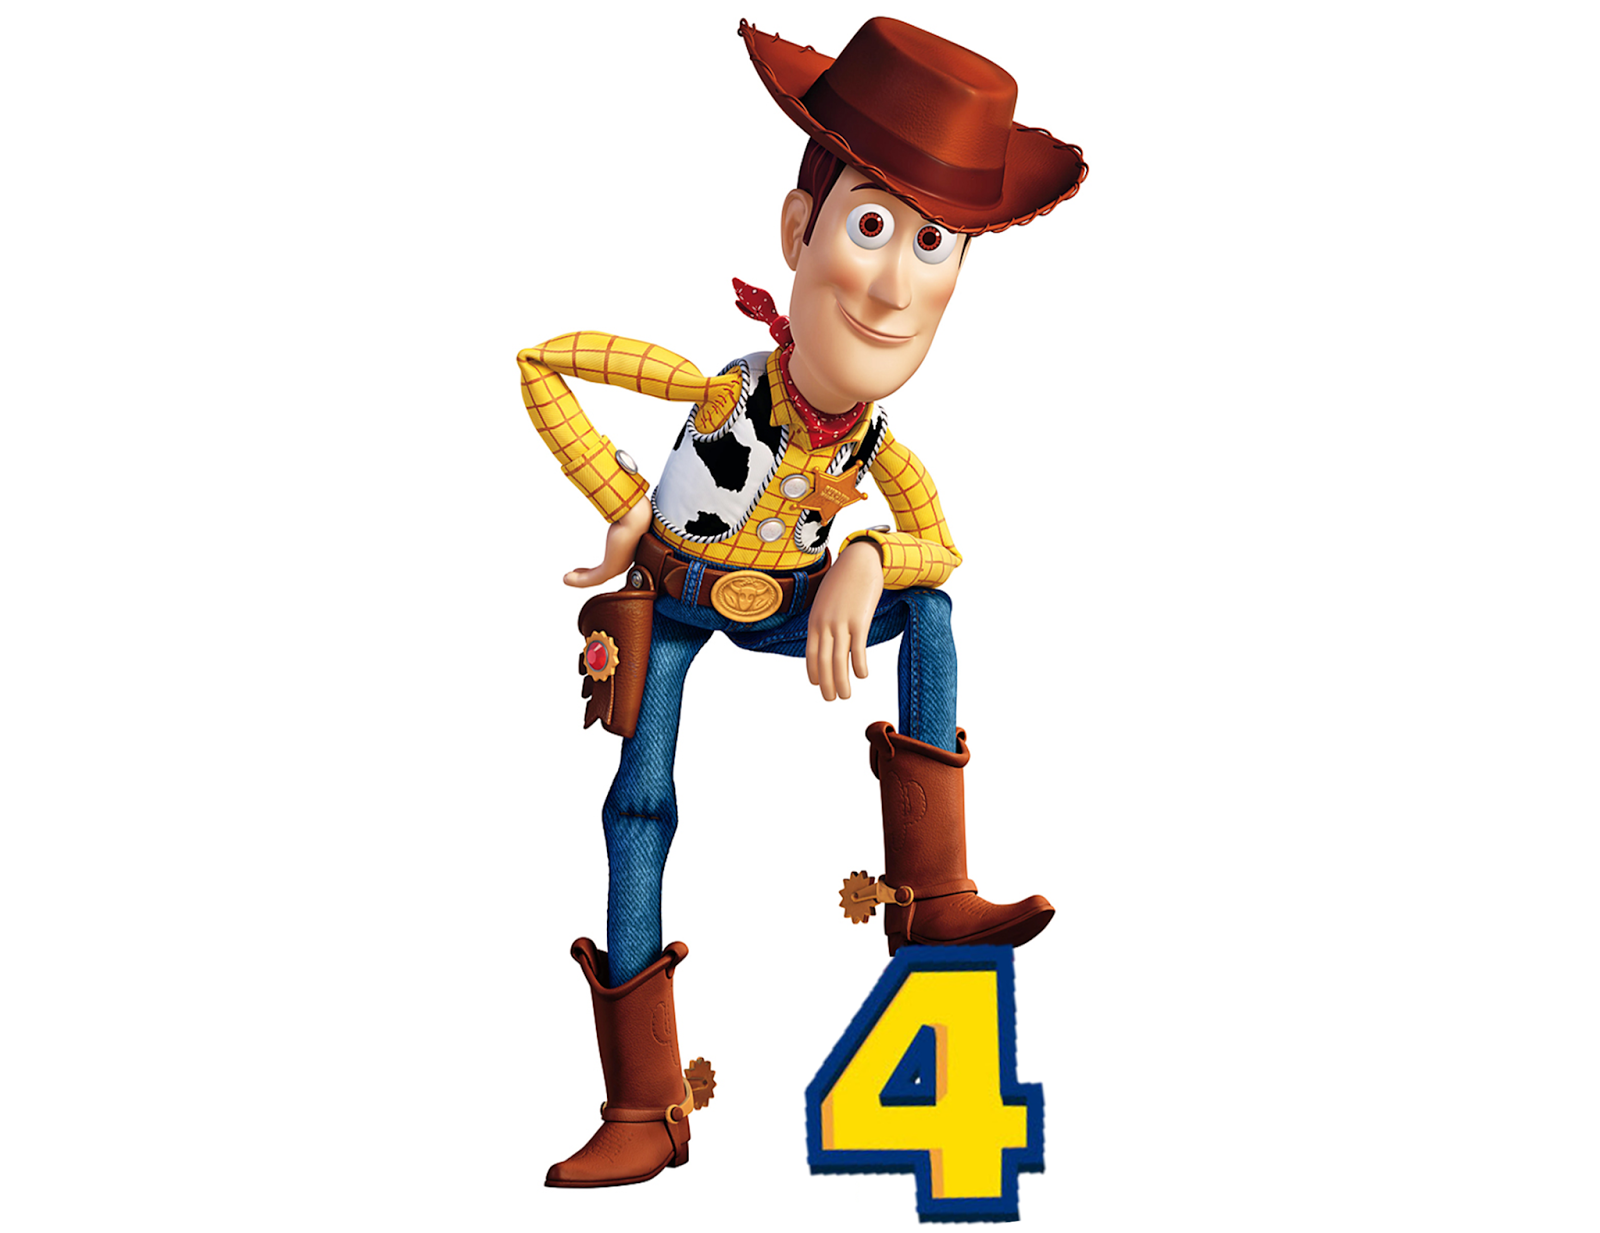 Woody toy story. Шериф Вуди. Toy story 4 Woody. История игрушек персонажи Вуди.